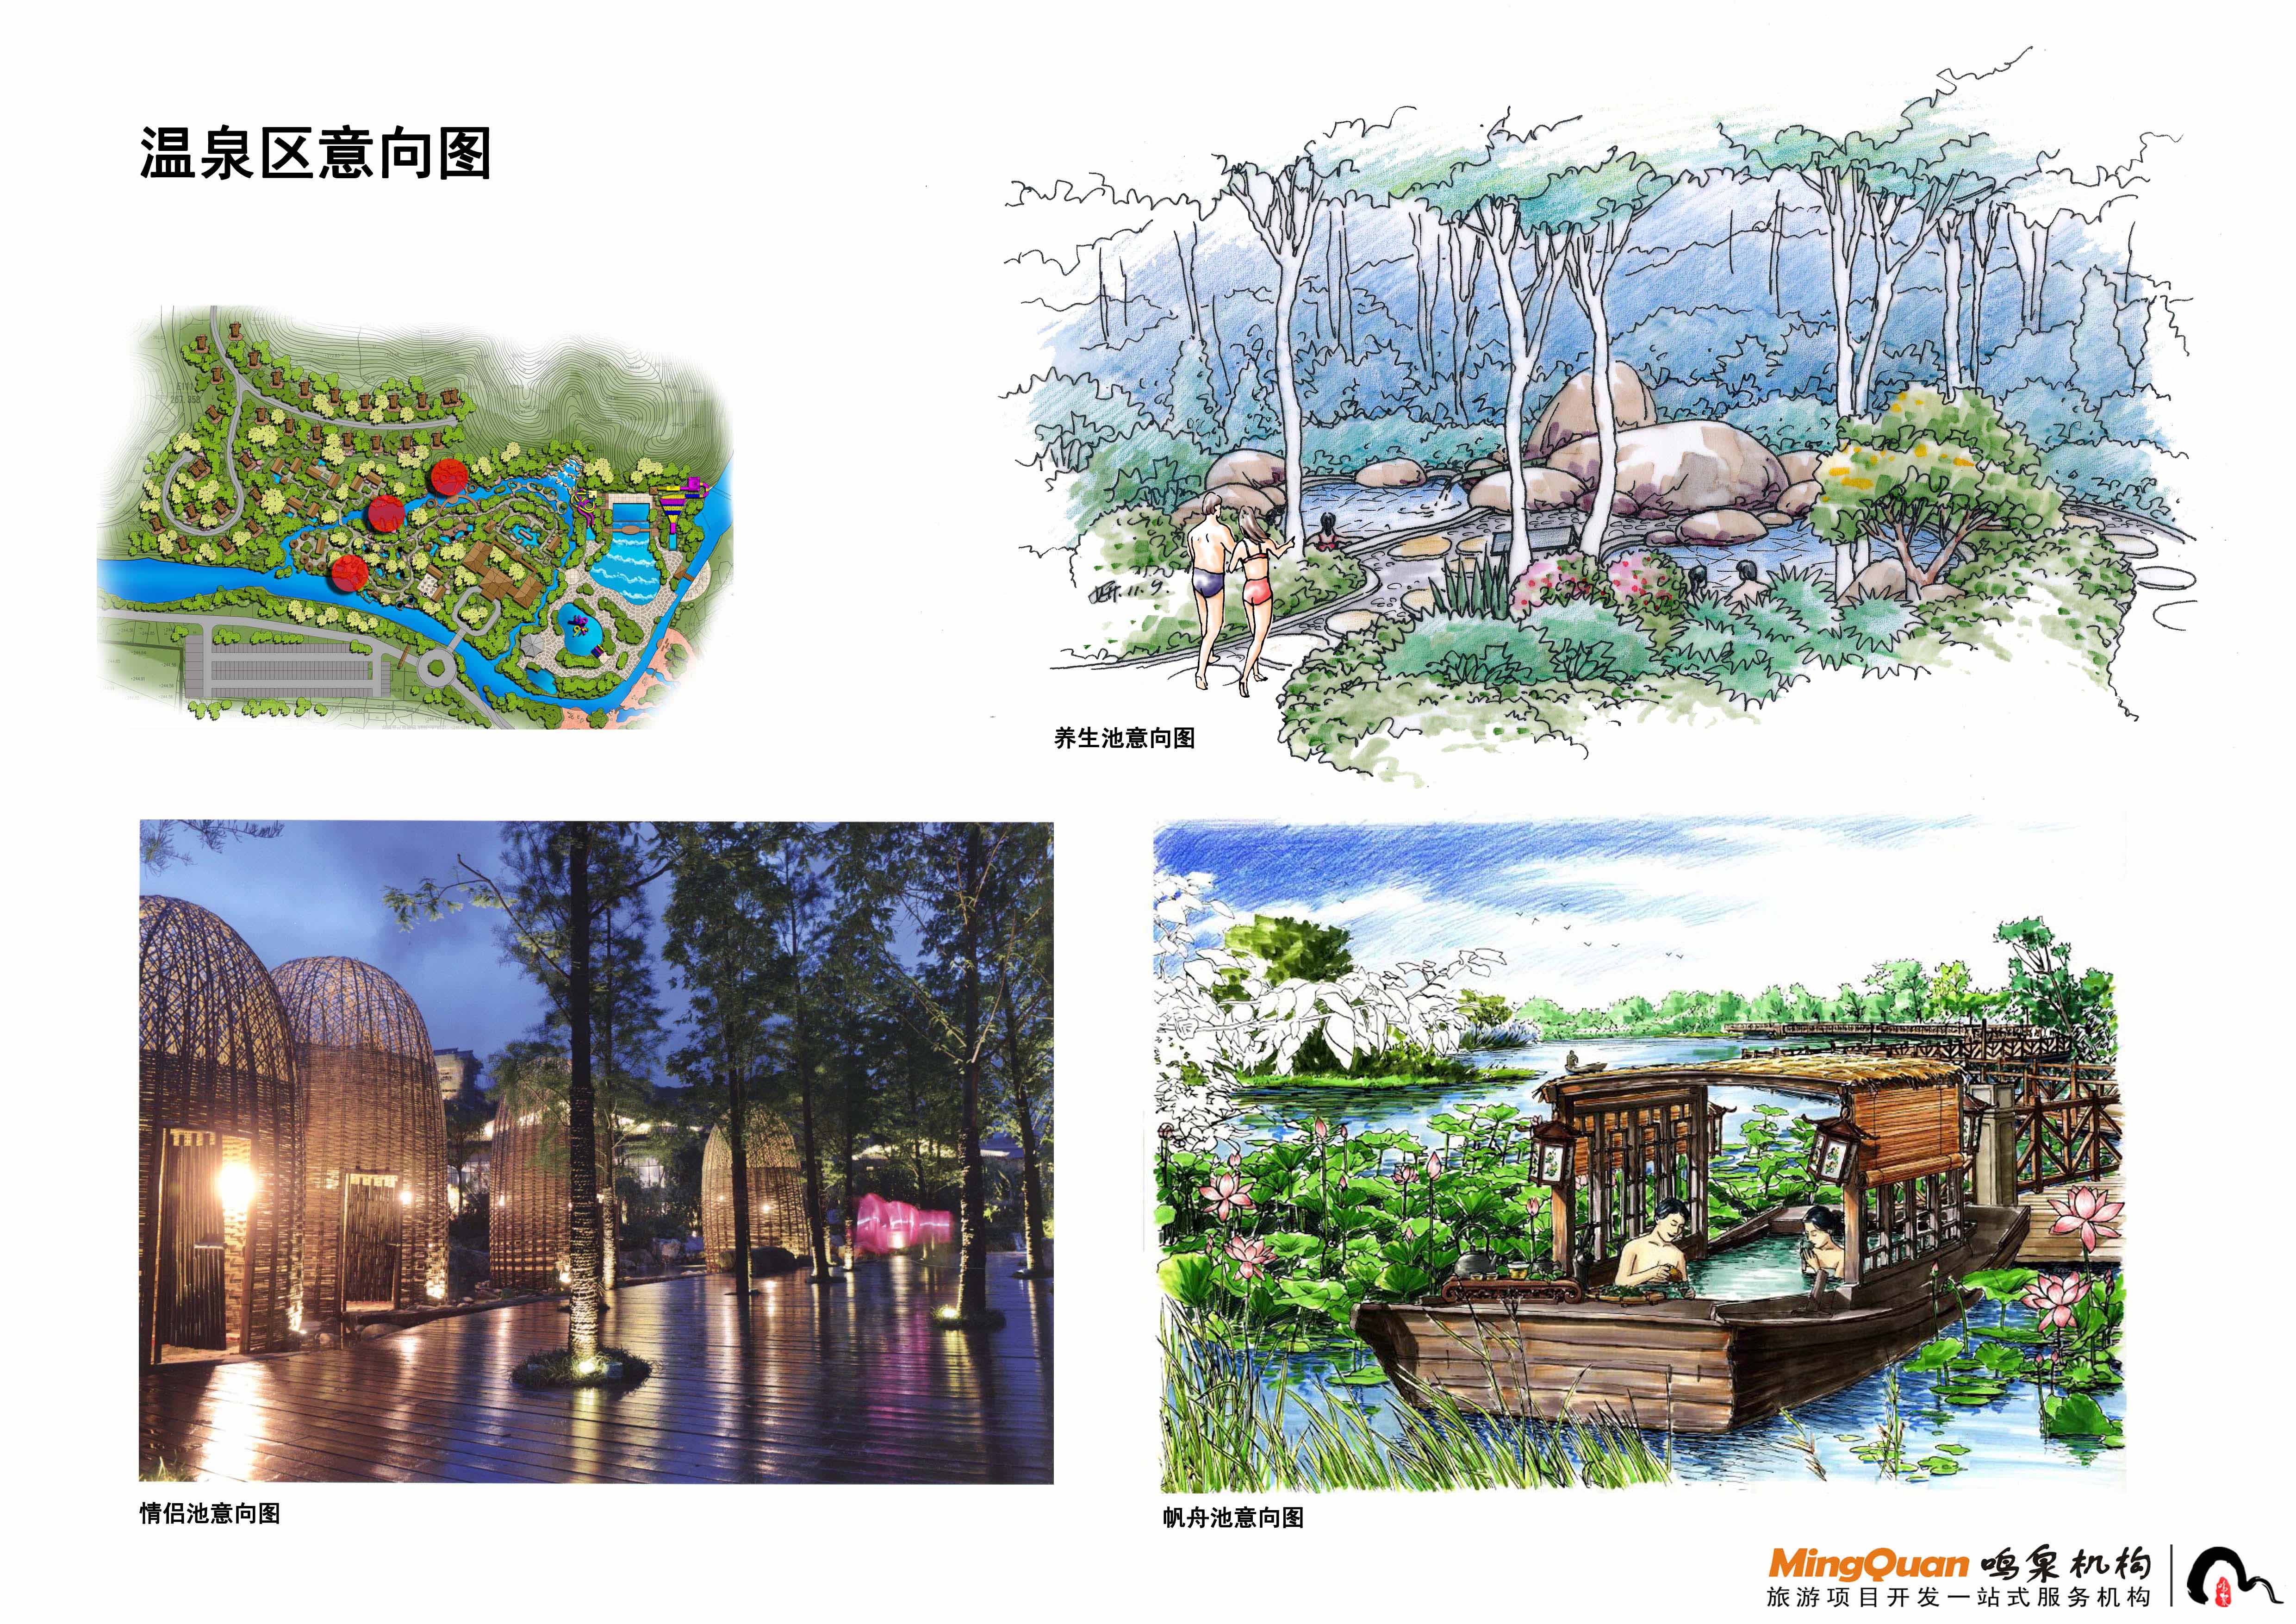 江西石城温泉规划设计机构